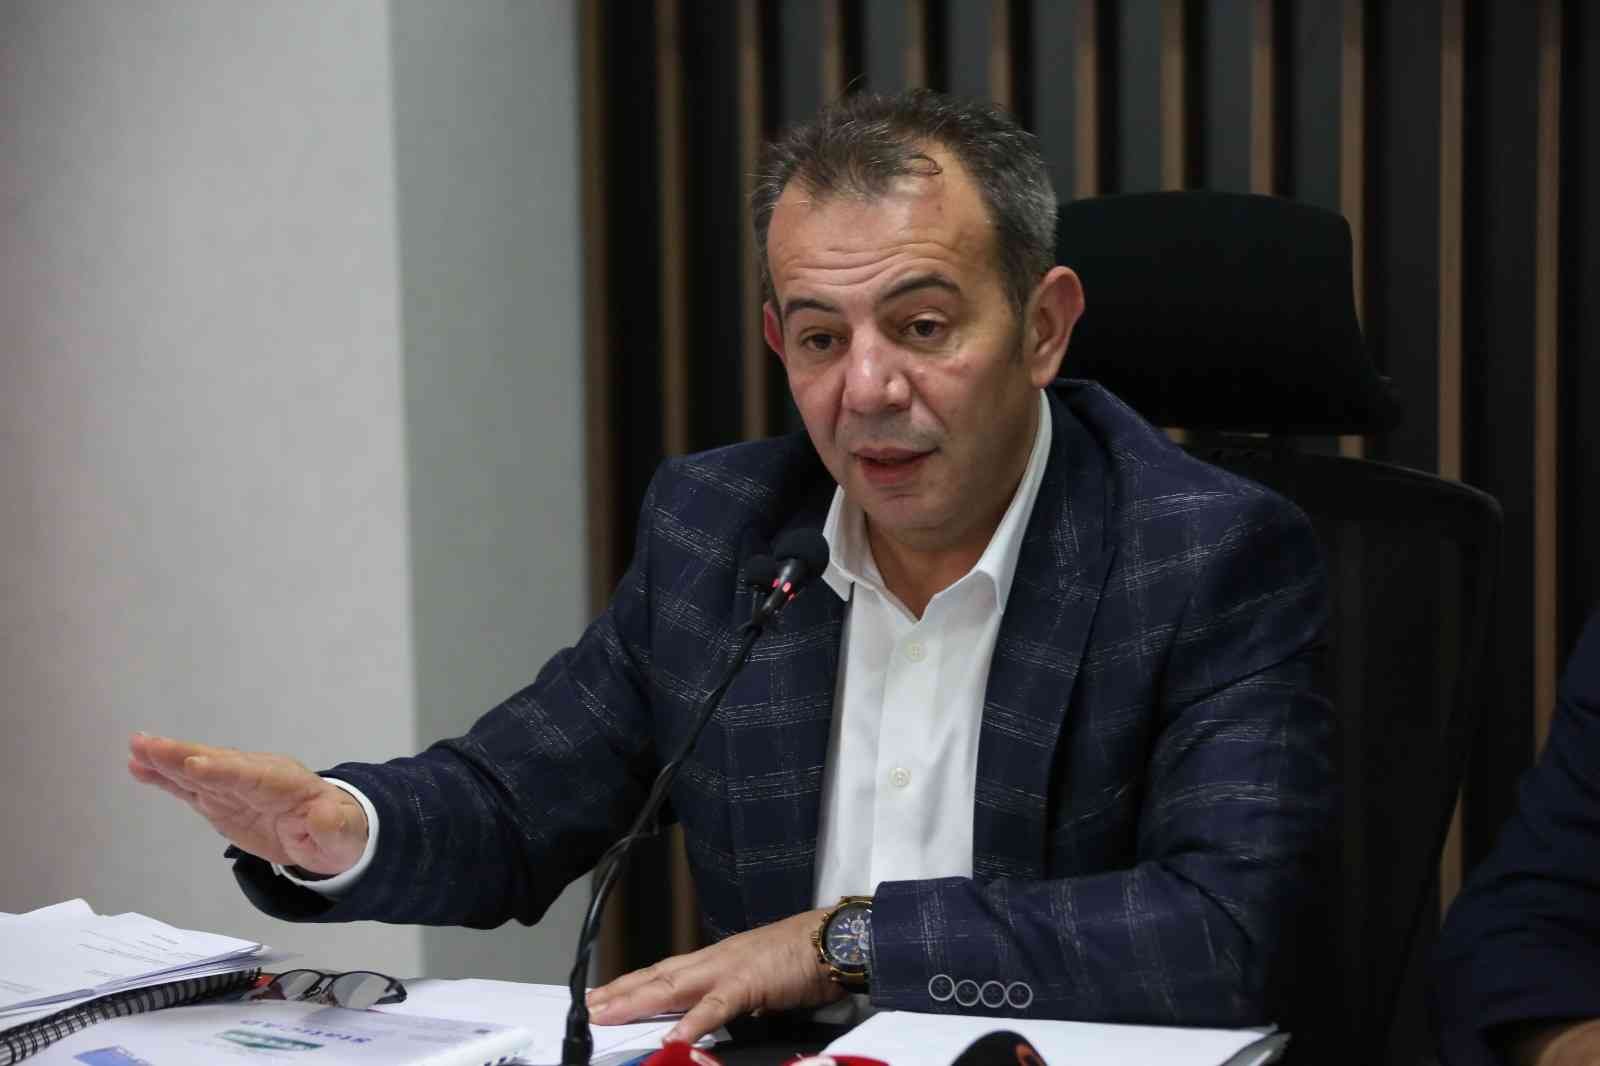 Bolu Belediye Başkanı Özcan’dan Cumhurbaşkanı adaylığı çıkışı